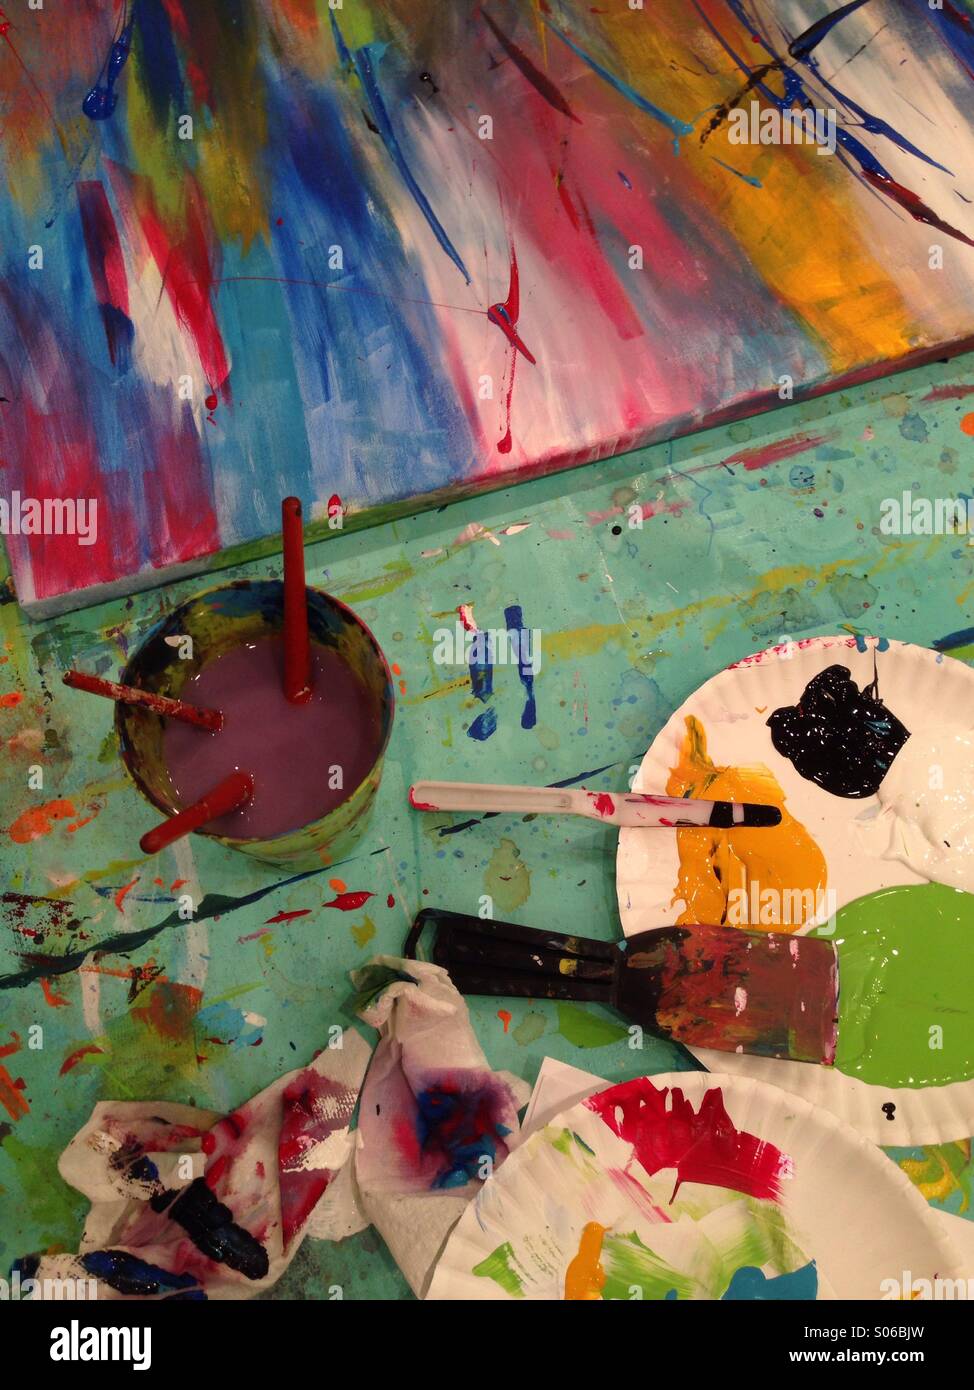 La pittura astratta della classe pasticcio di vernice, colore e spazzole durante un principianti dipinto astratto di classe Foto Stock